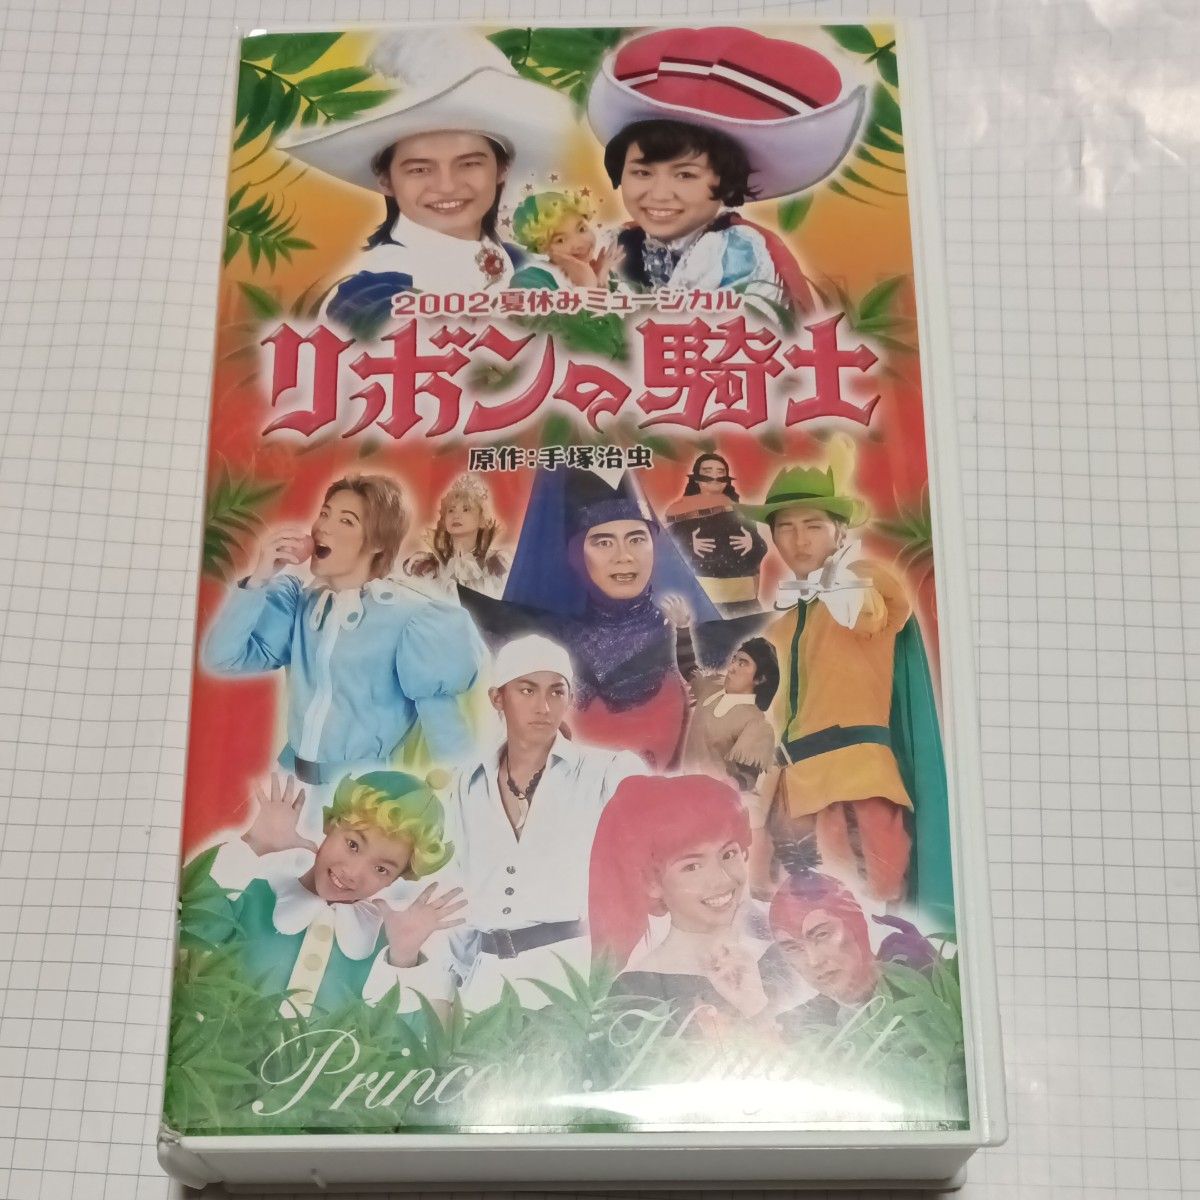 手塚プロダクション2002 夏休みミュージカルリボンの騎士 VHS ビデオ